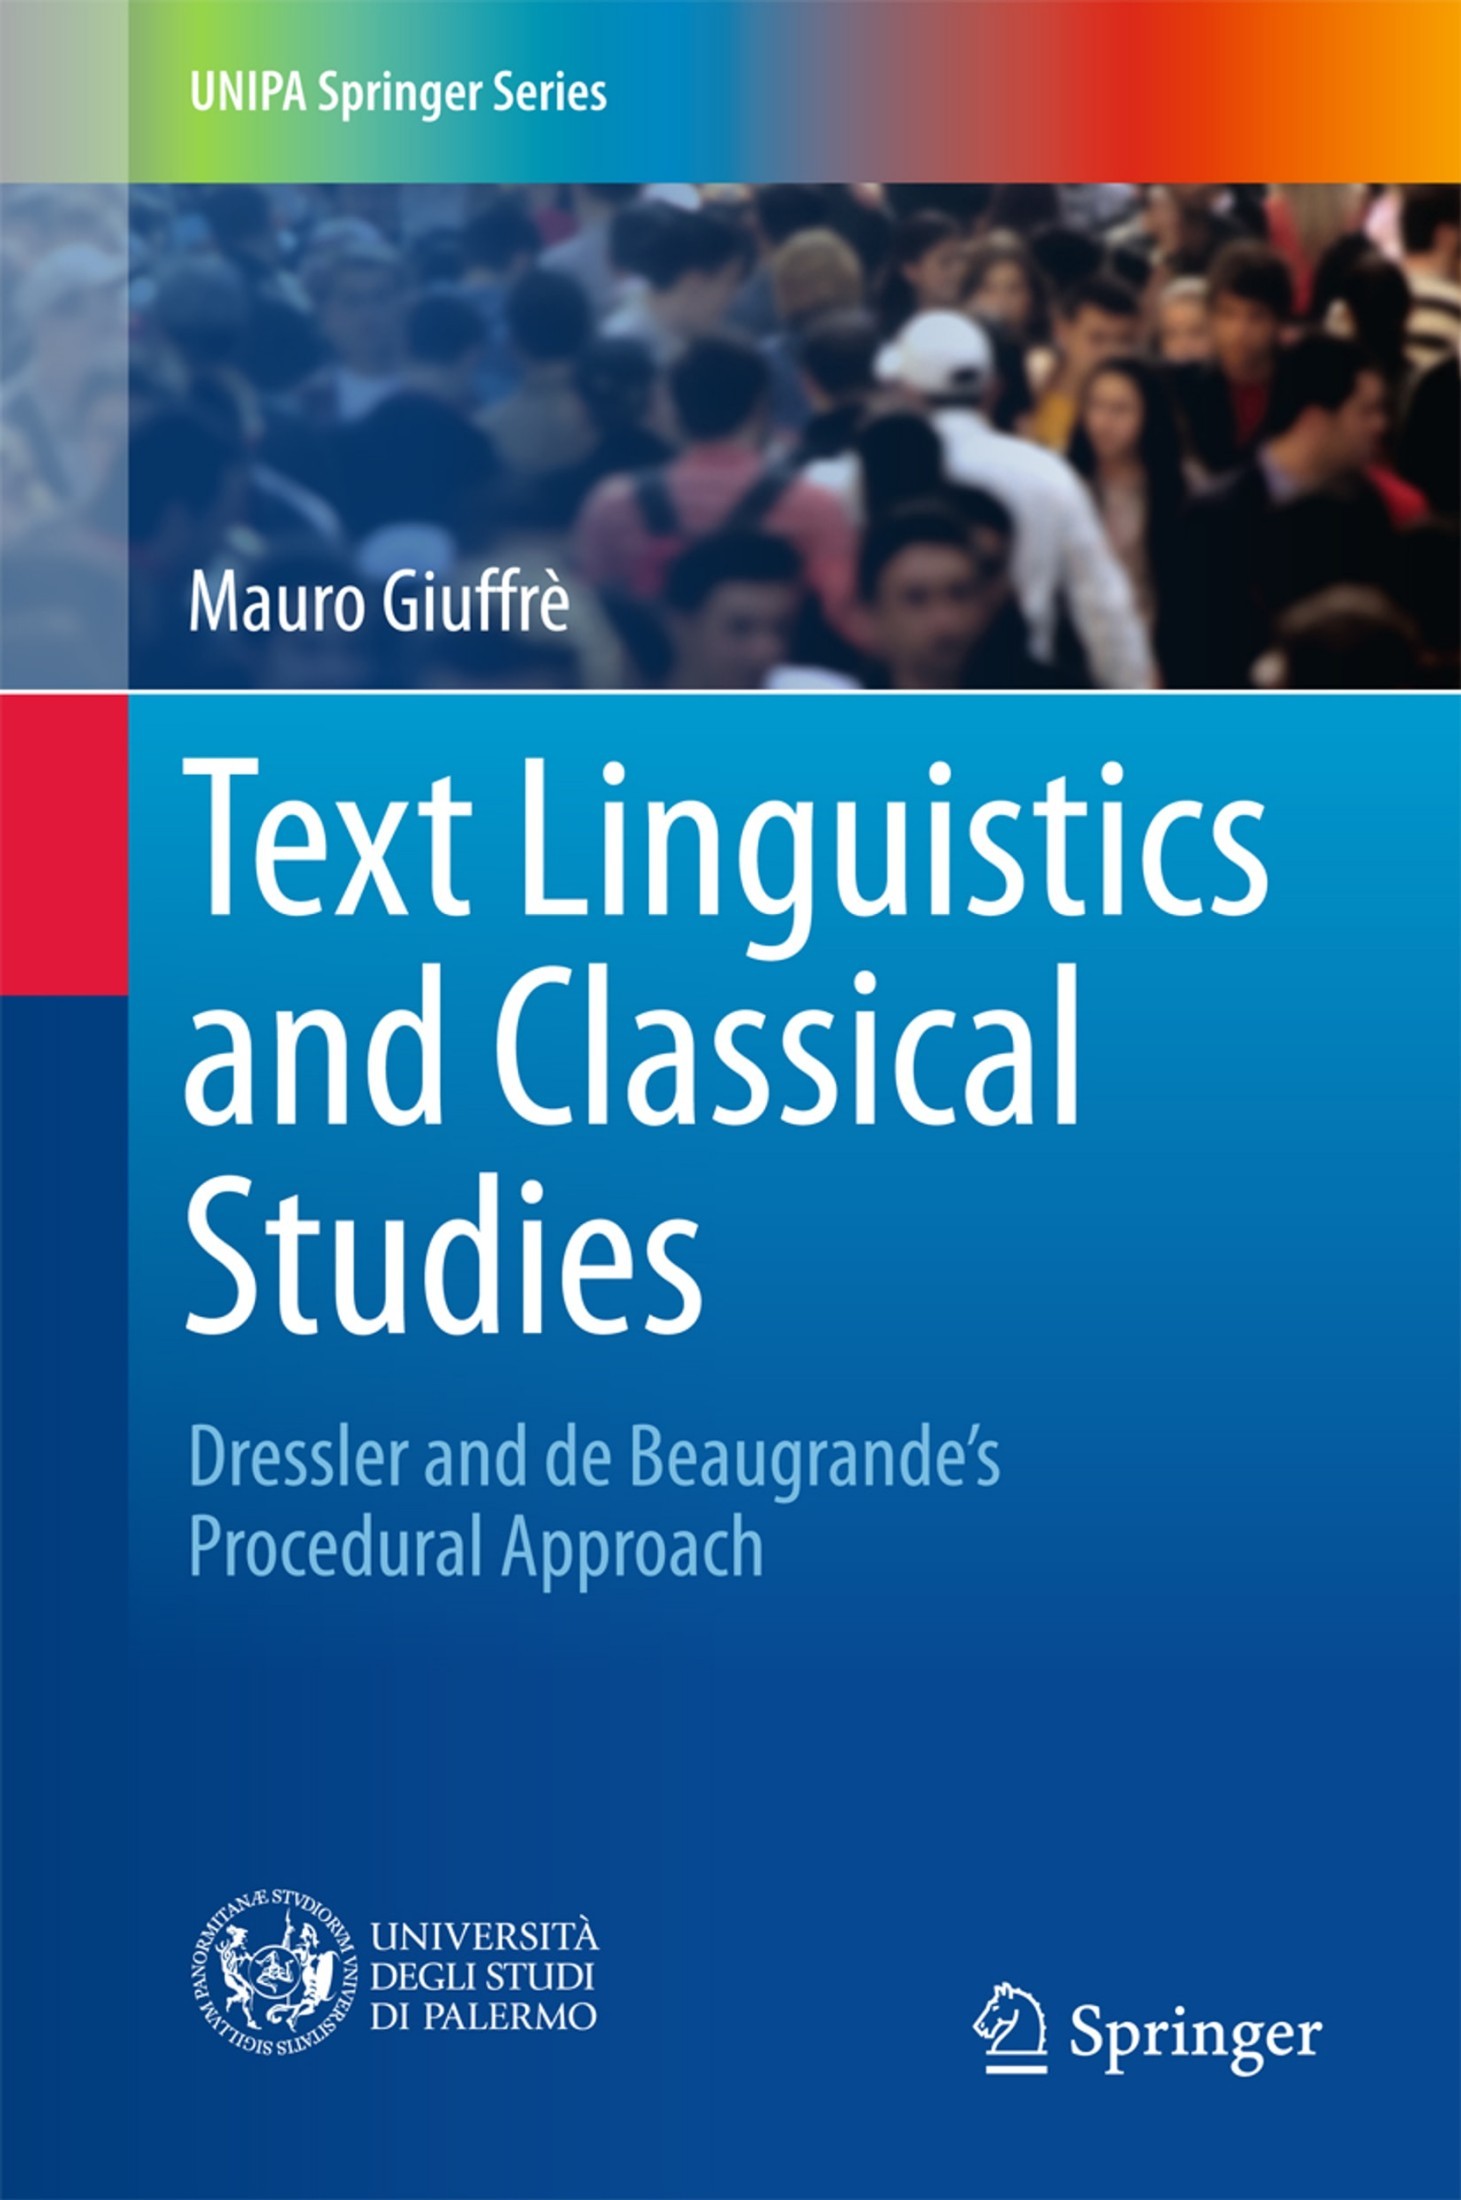 Text Linguistics and Classical Studies